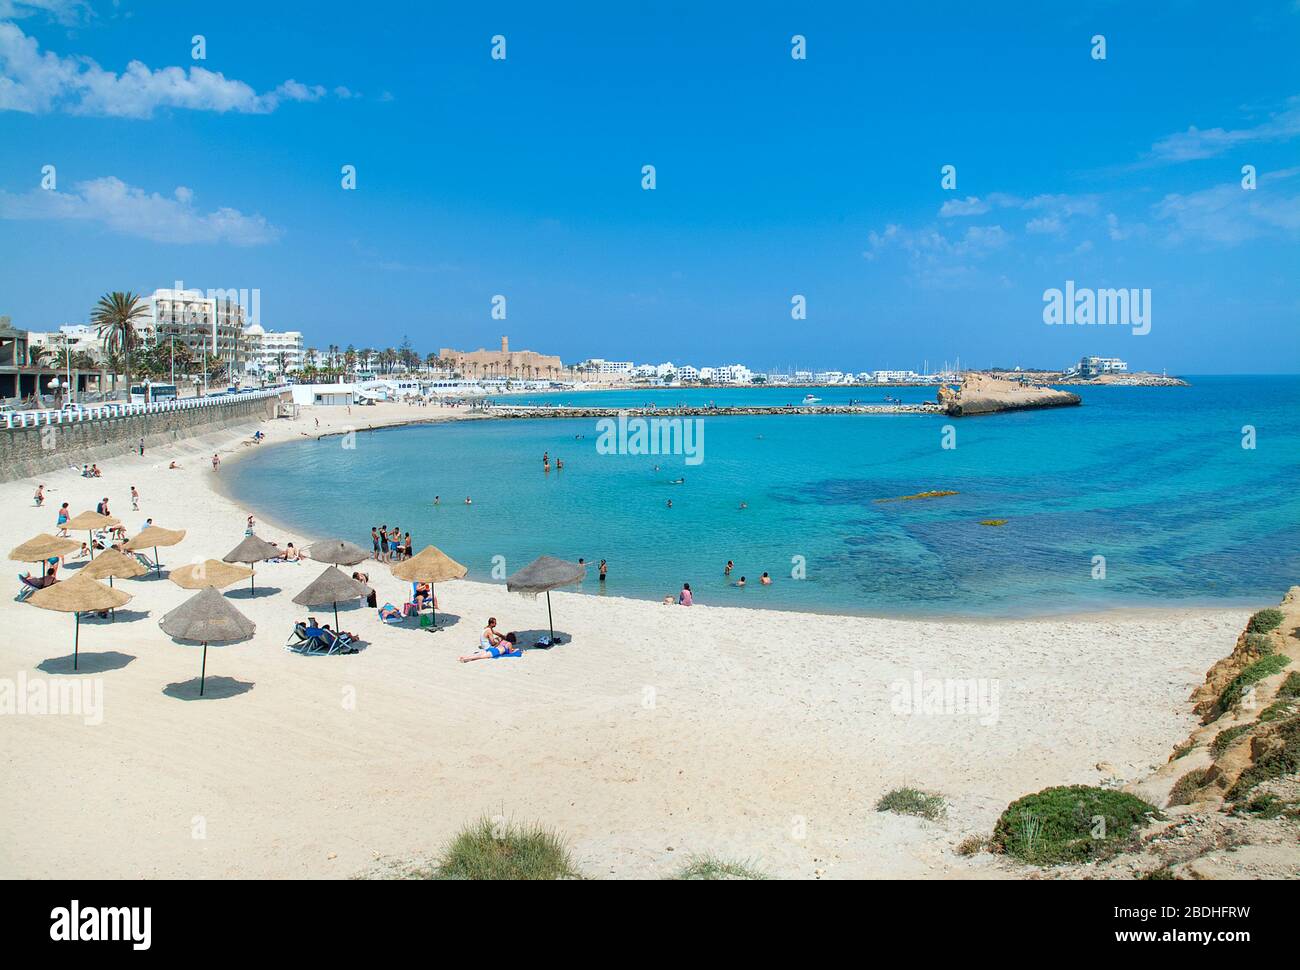 Plage de Monastir avec Ribat donnant sur la mer, Tunisie Banque D'Images